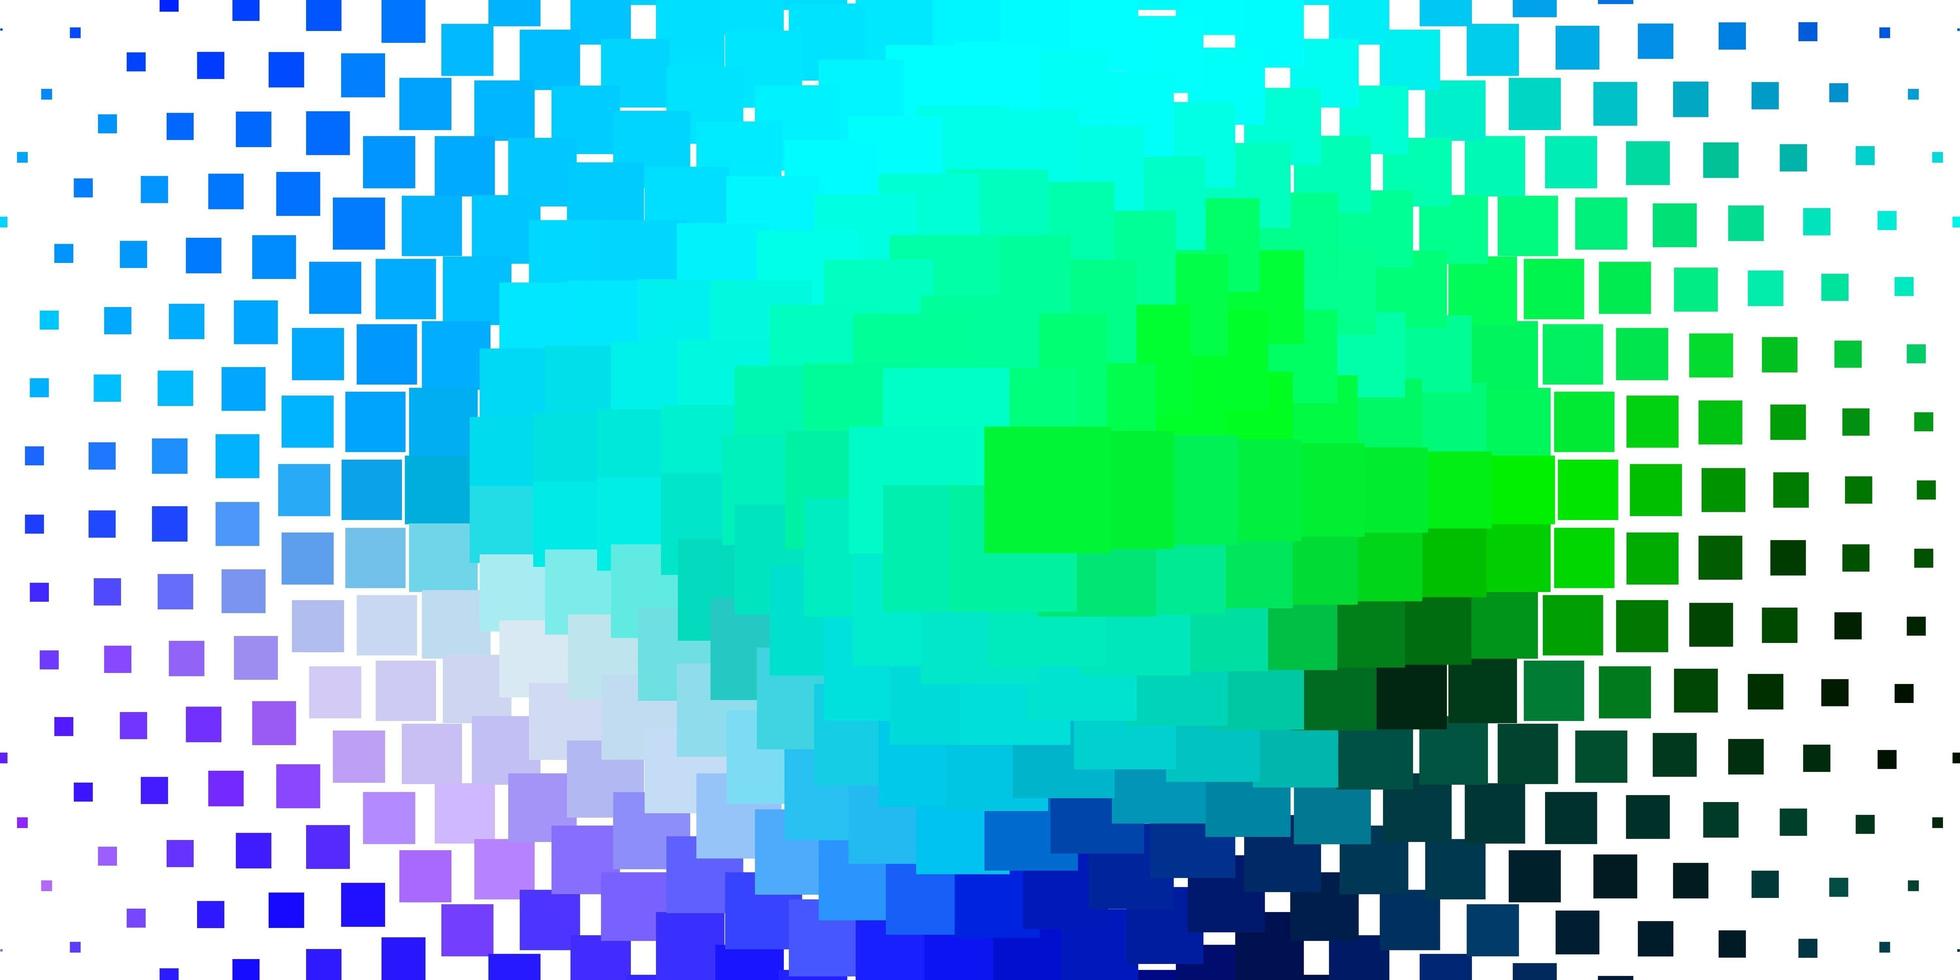 ljusblå, grön vektorbakgrund med rektanglar. vektor